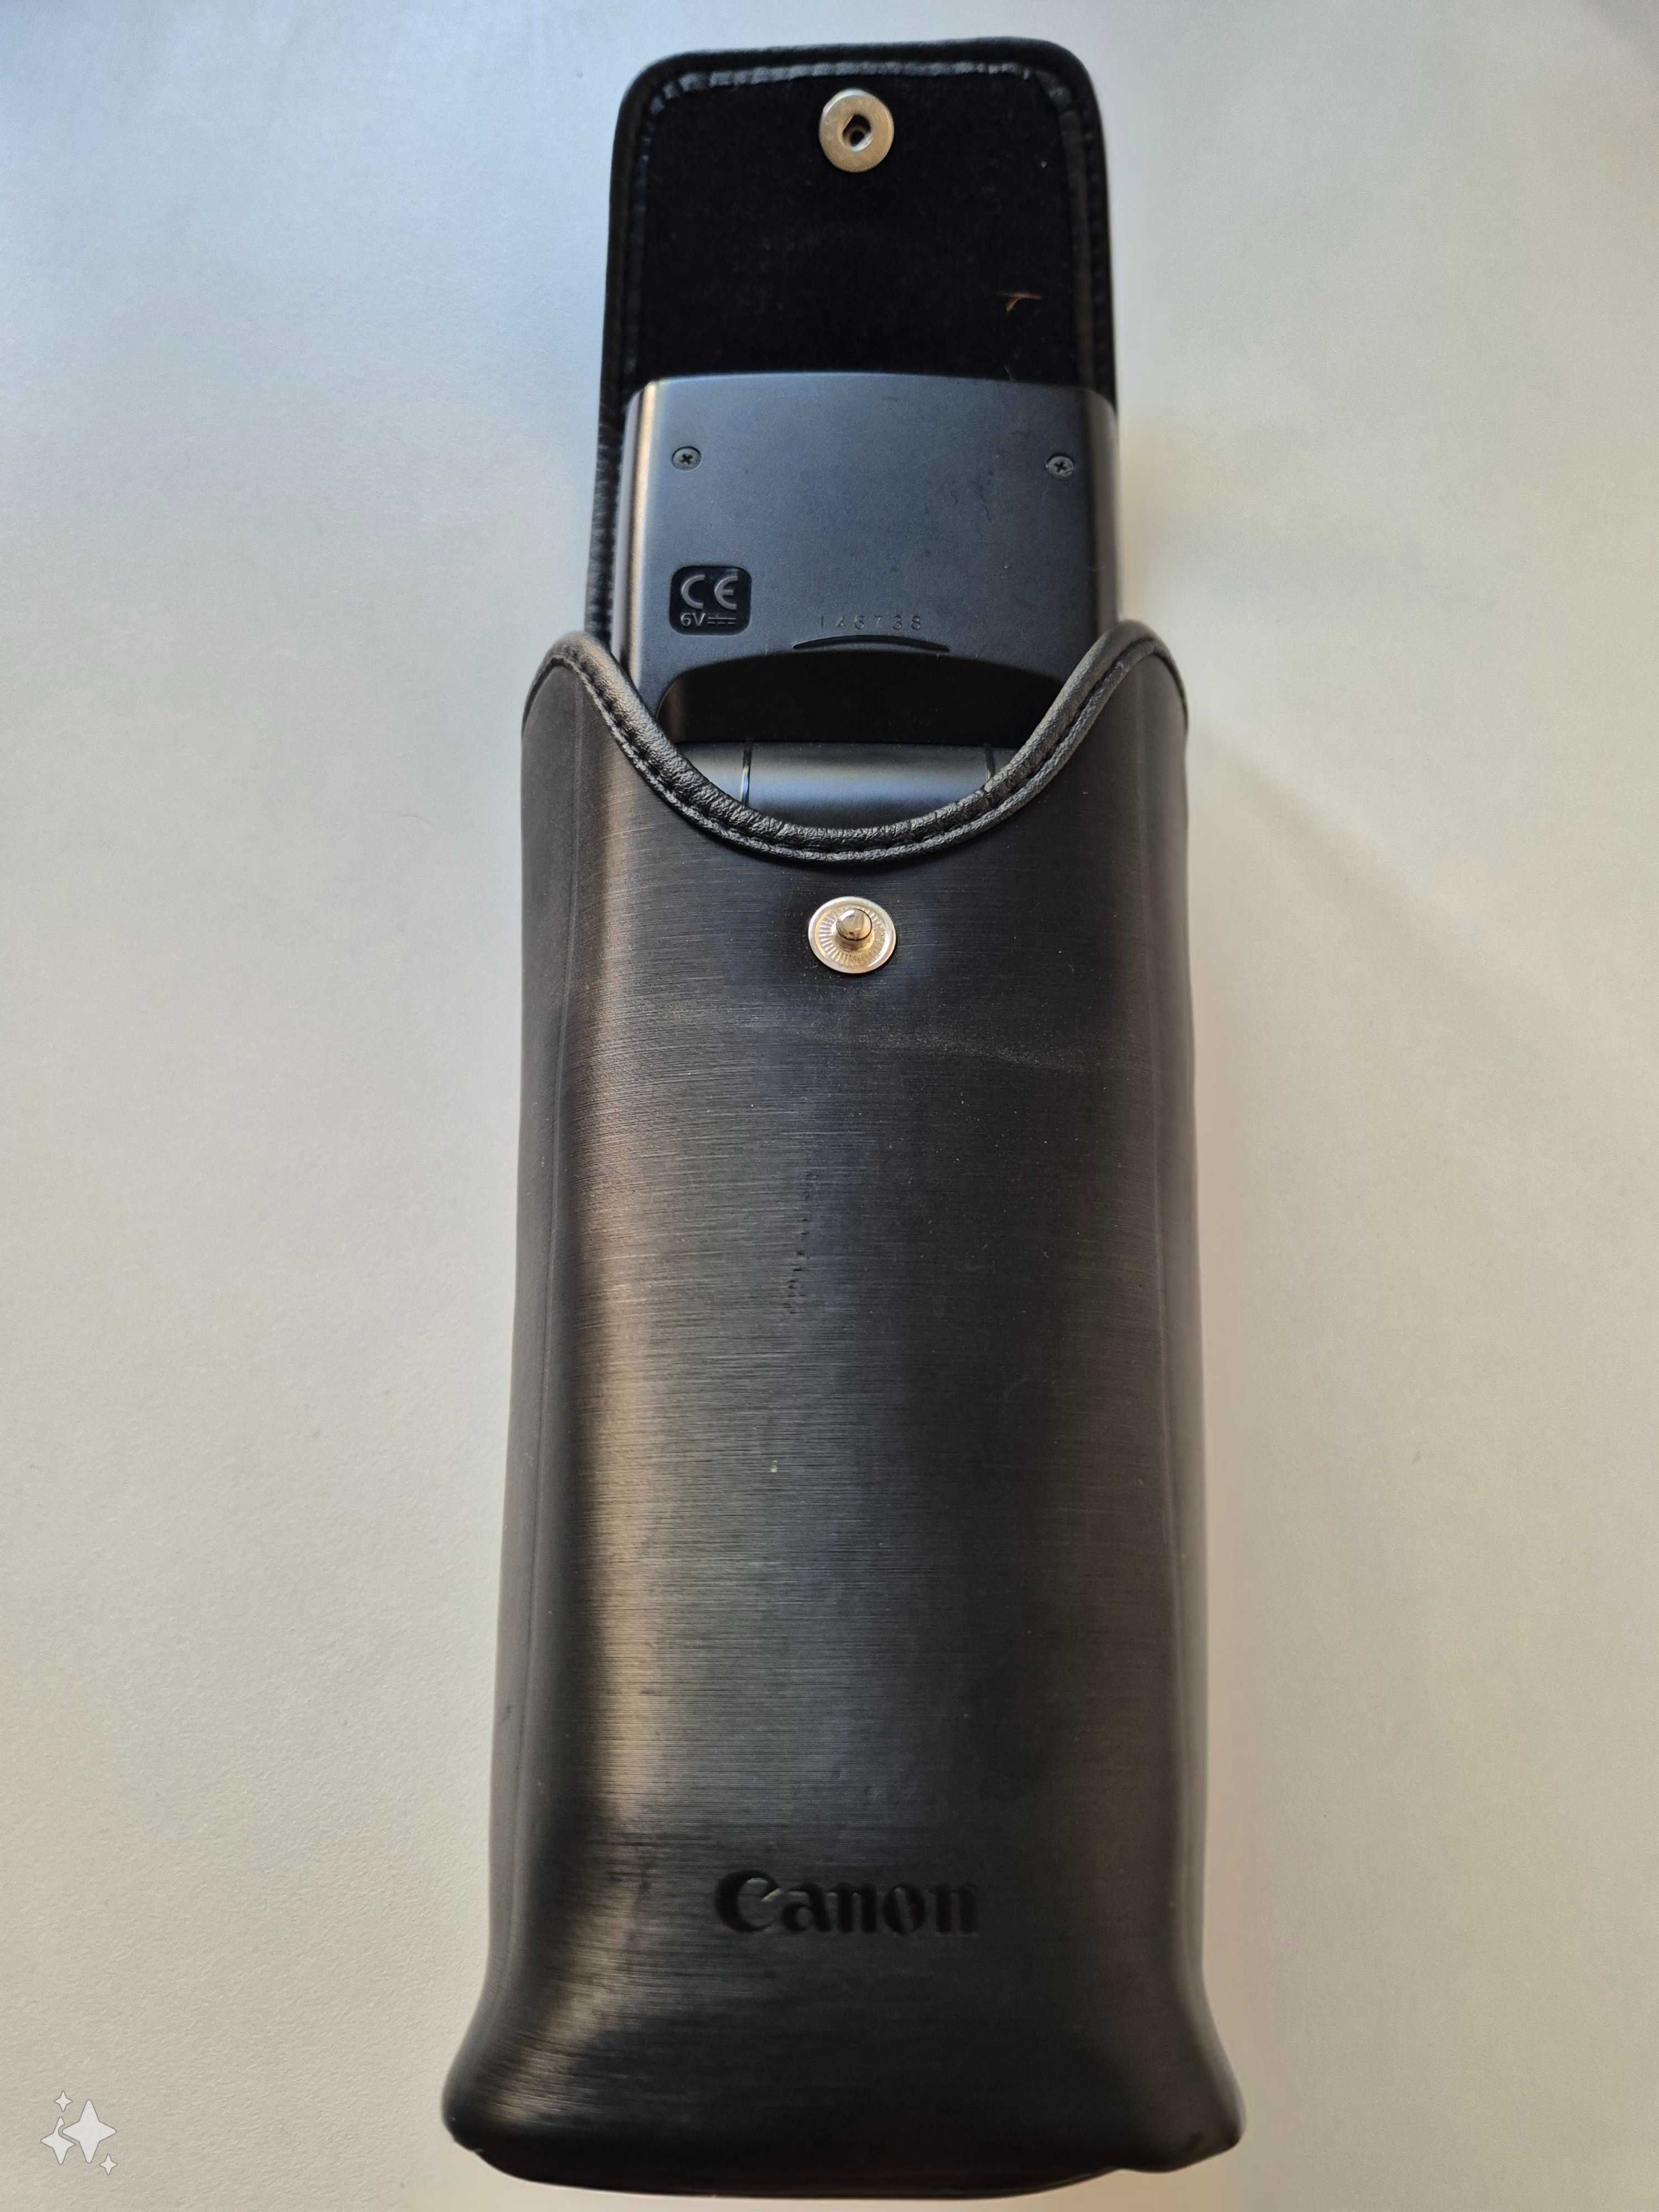 Lampa błyskowa Canon Speedlite 580 EX  - stan idealny plus pokrowiec